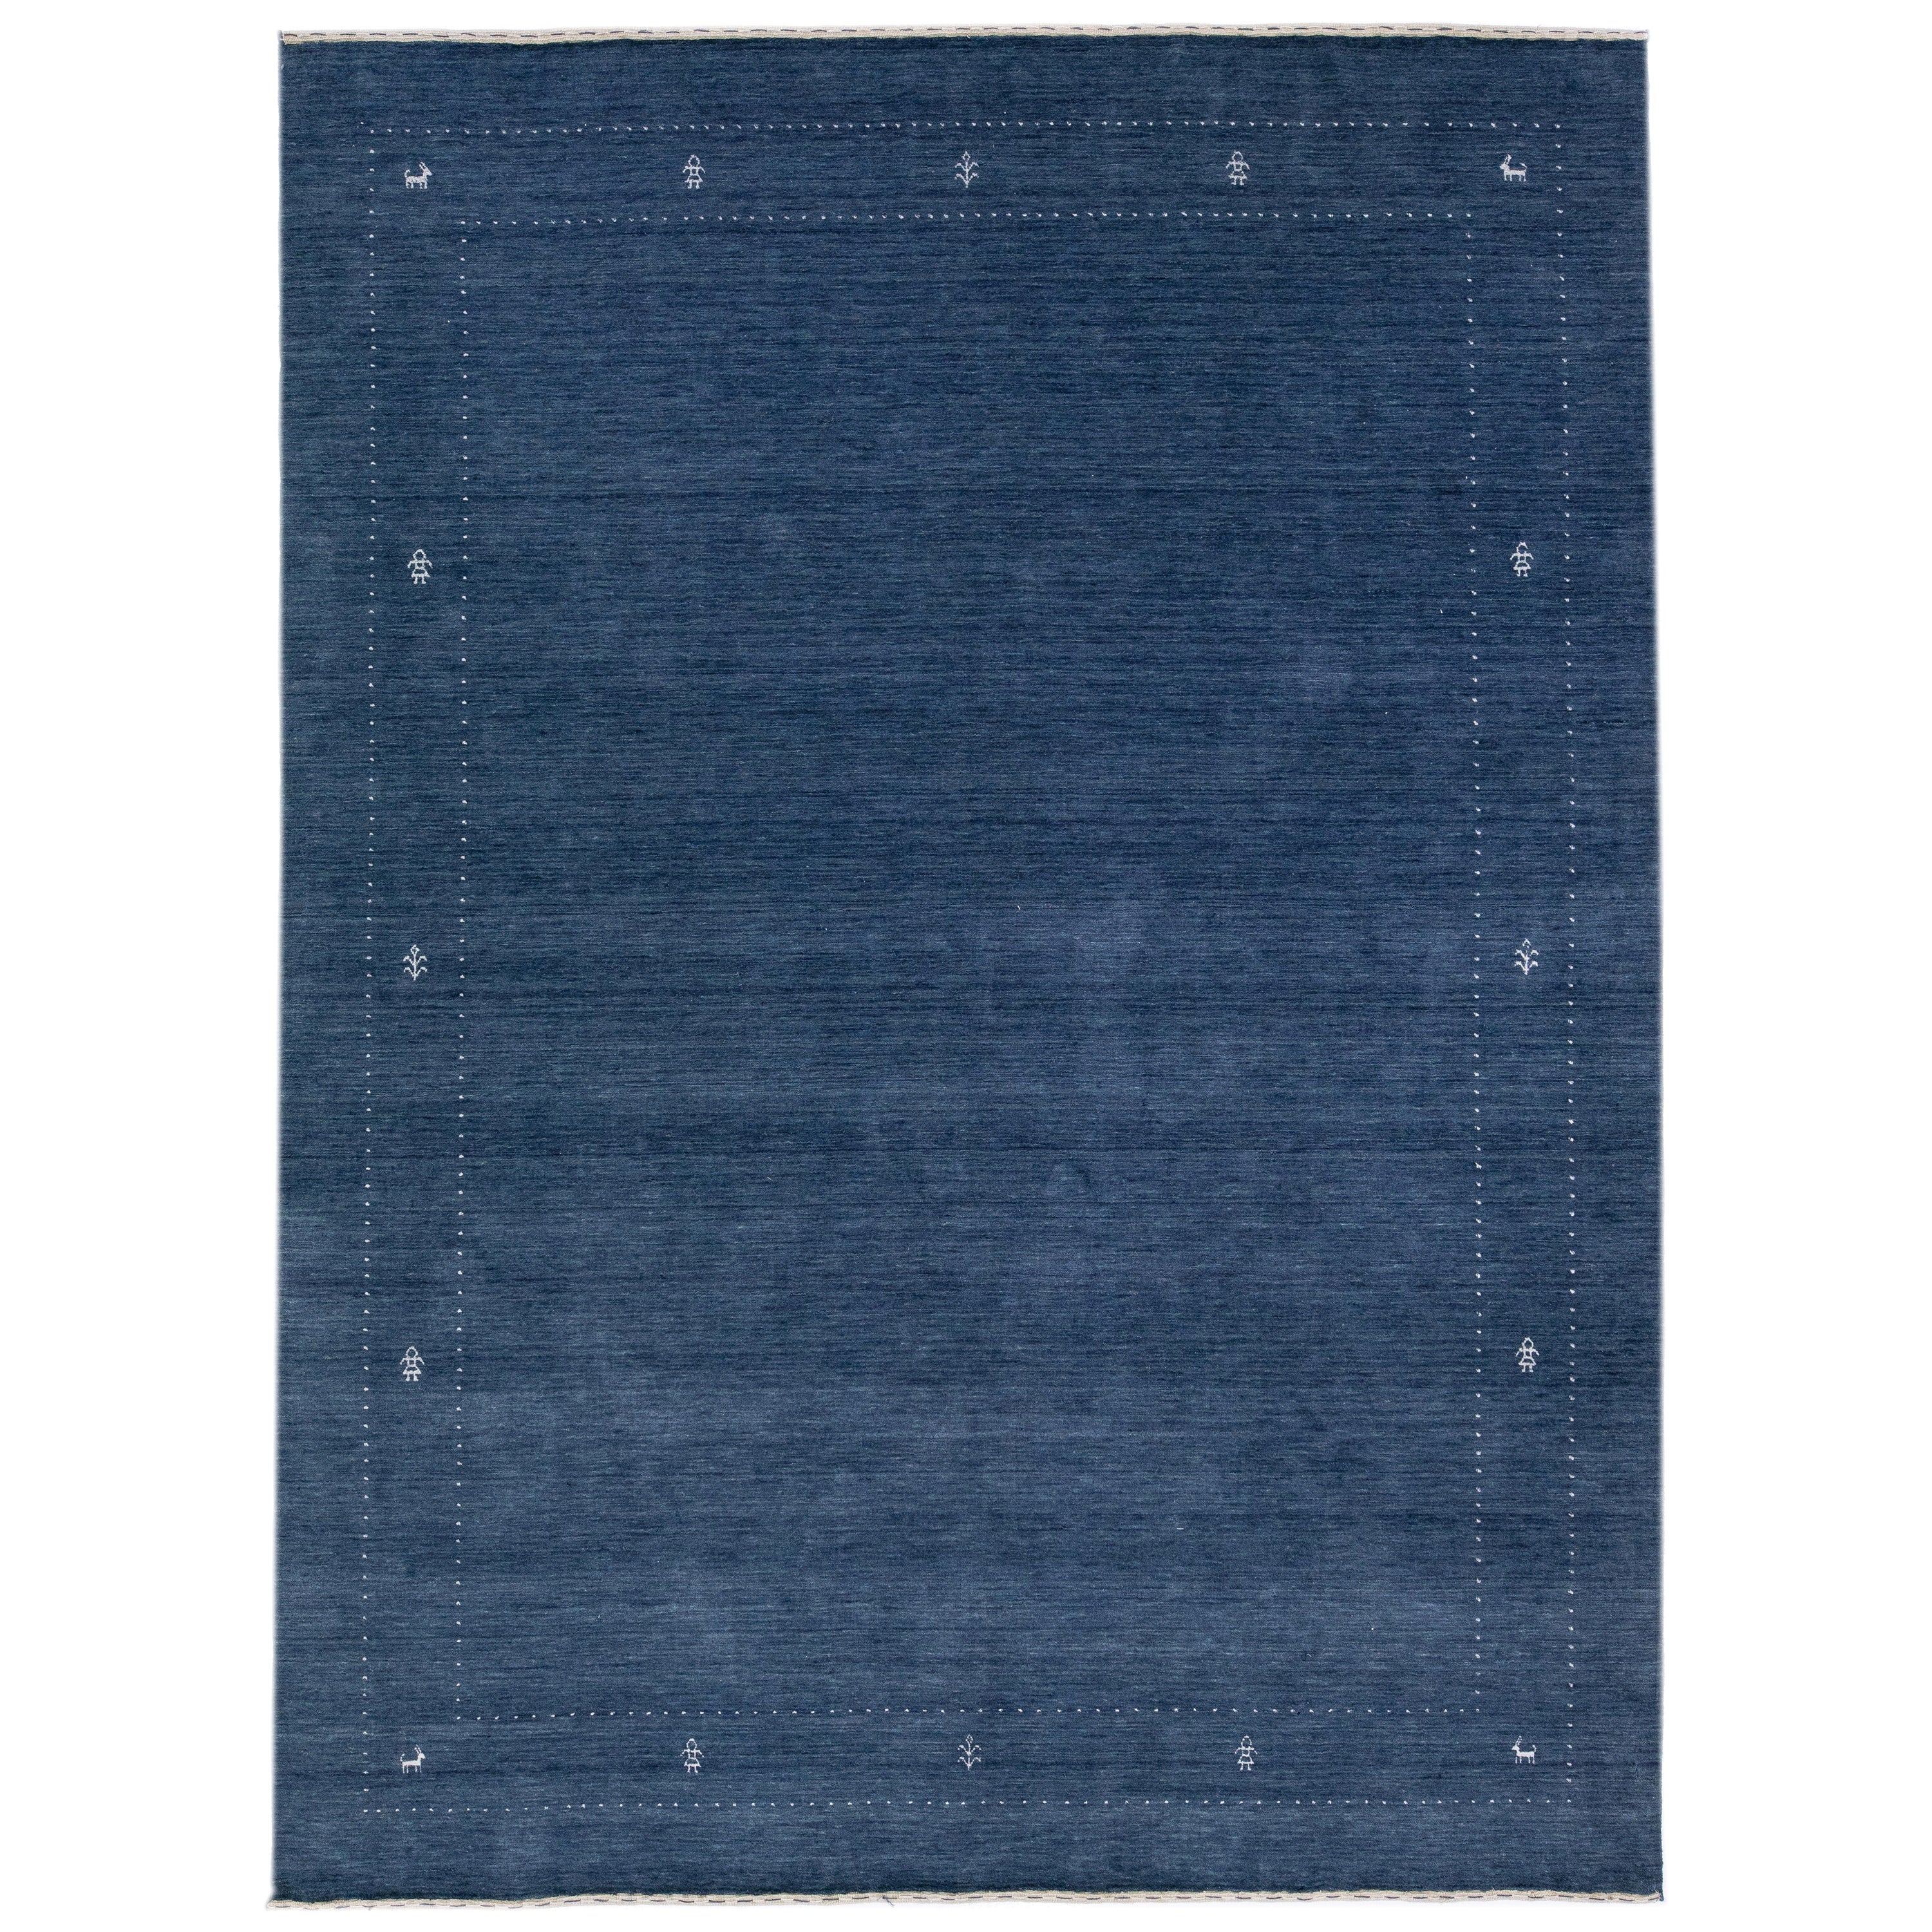  Tapis moderne en laine bleue de style Gabbeh fait à la main avec motif minimaliste